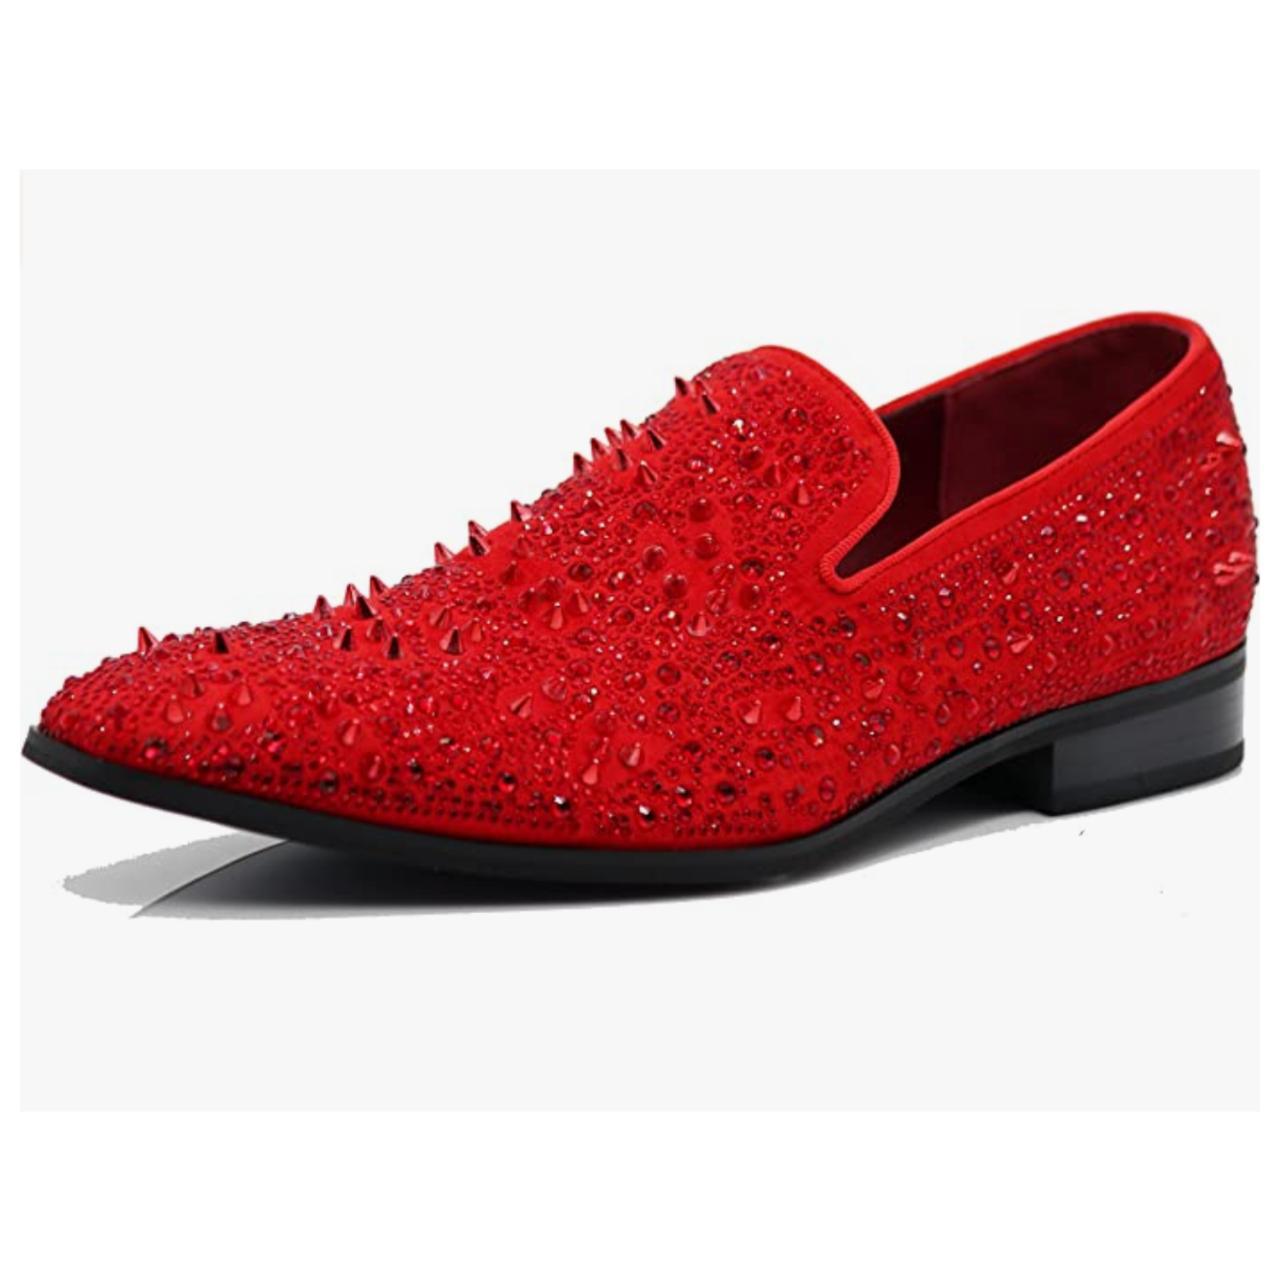 Men's Vintage Spike Dress Loafers Slip On Fashion... - Depop